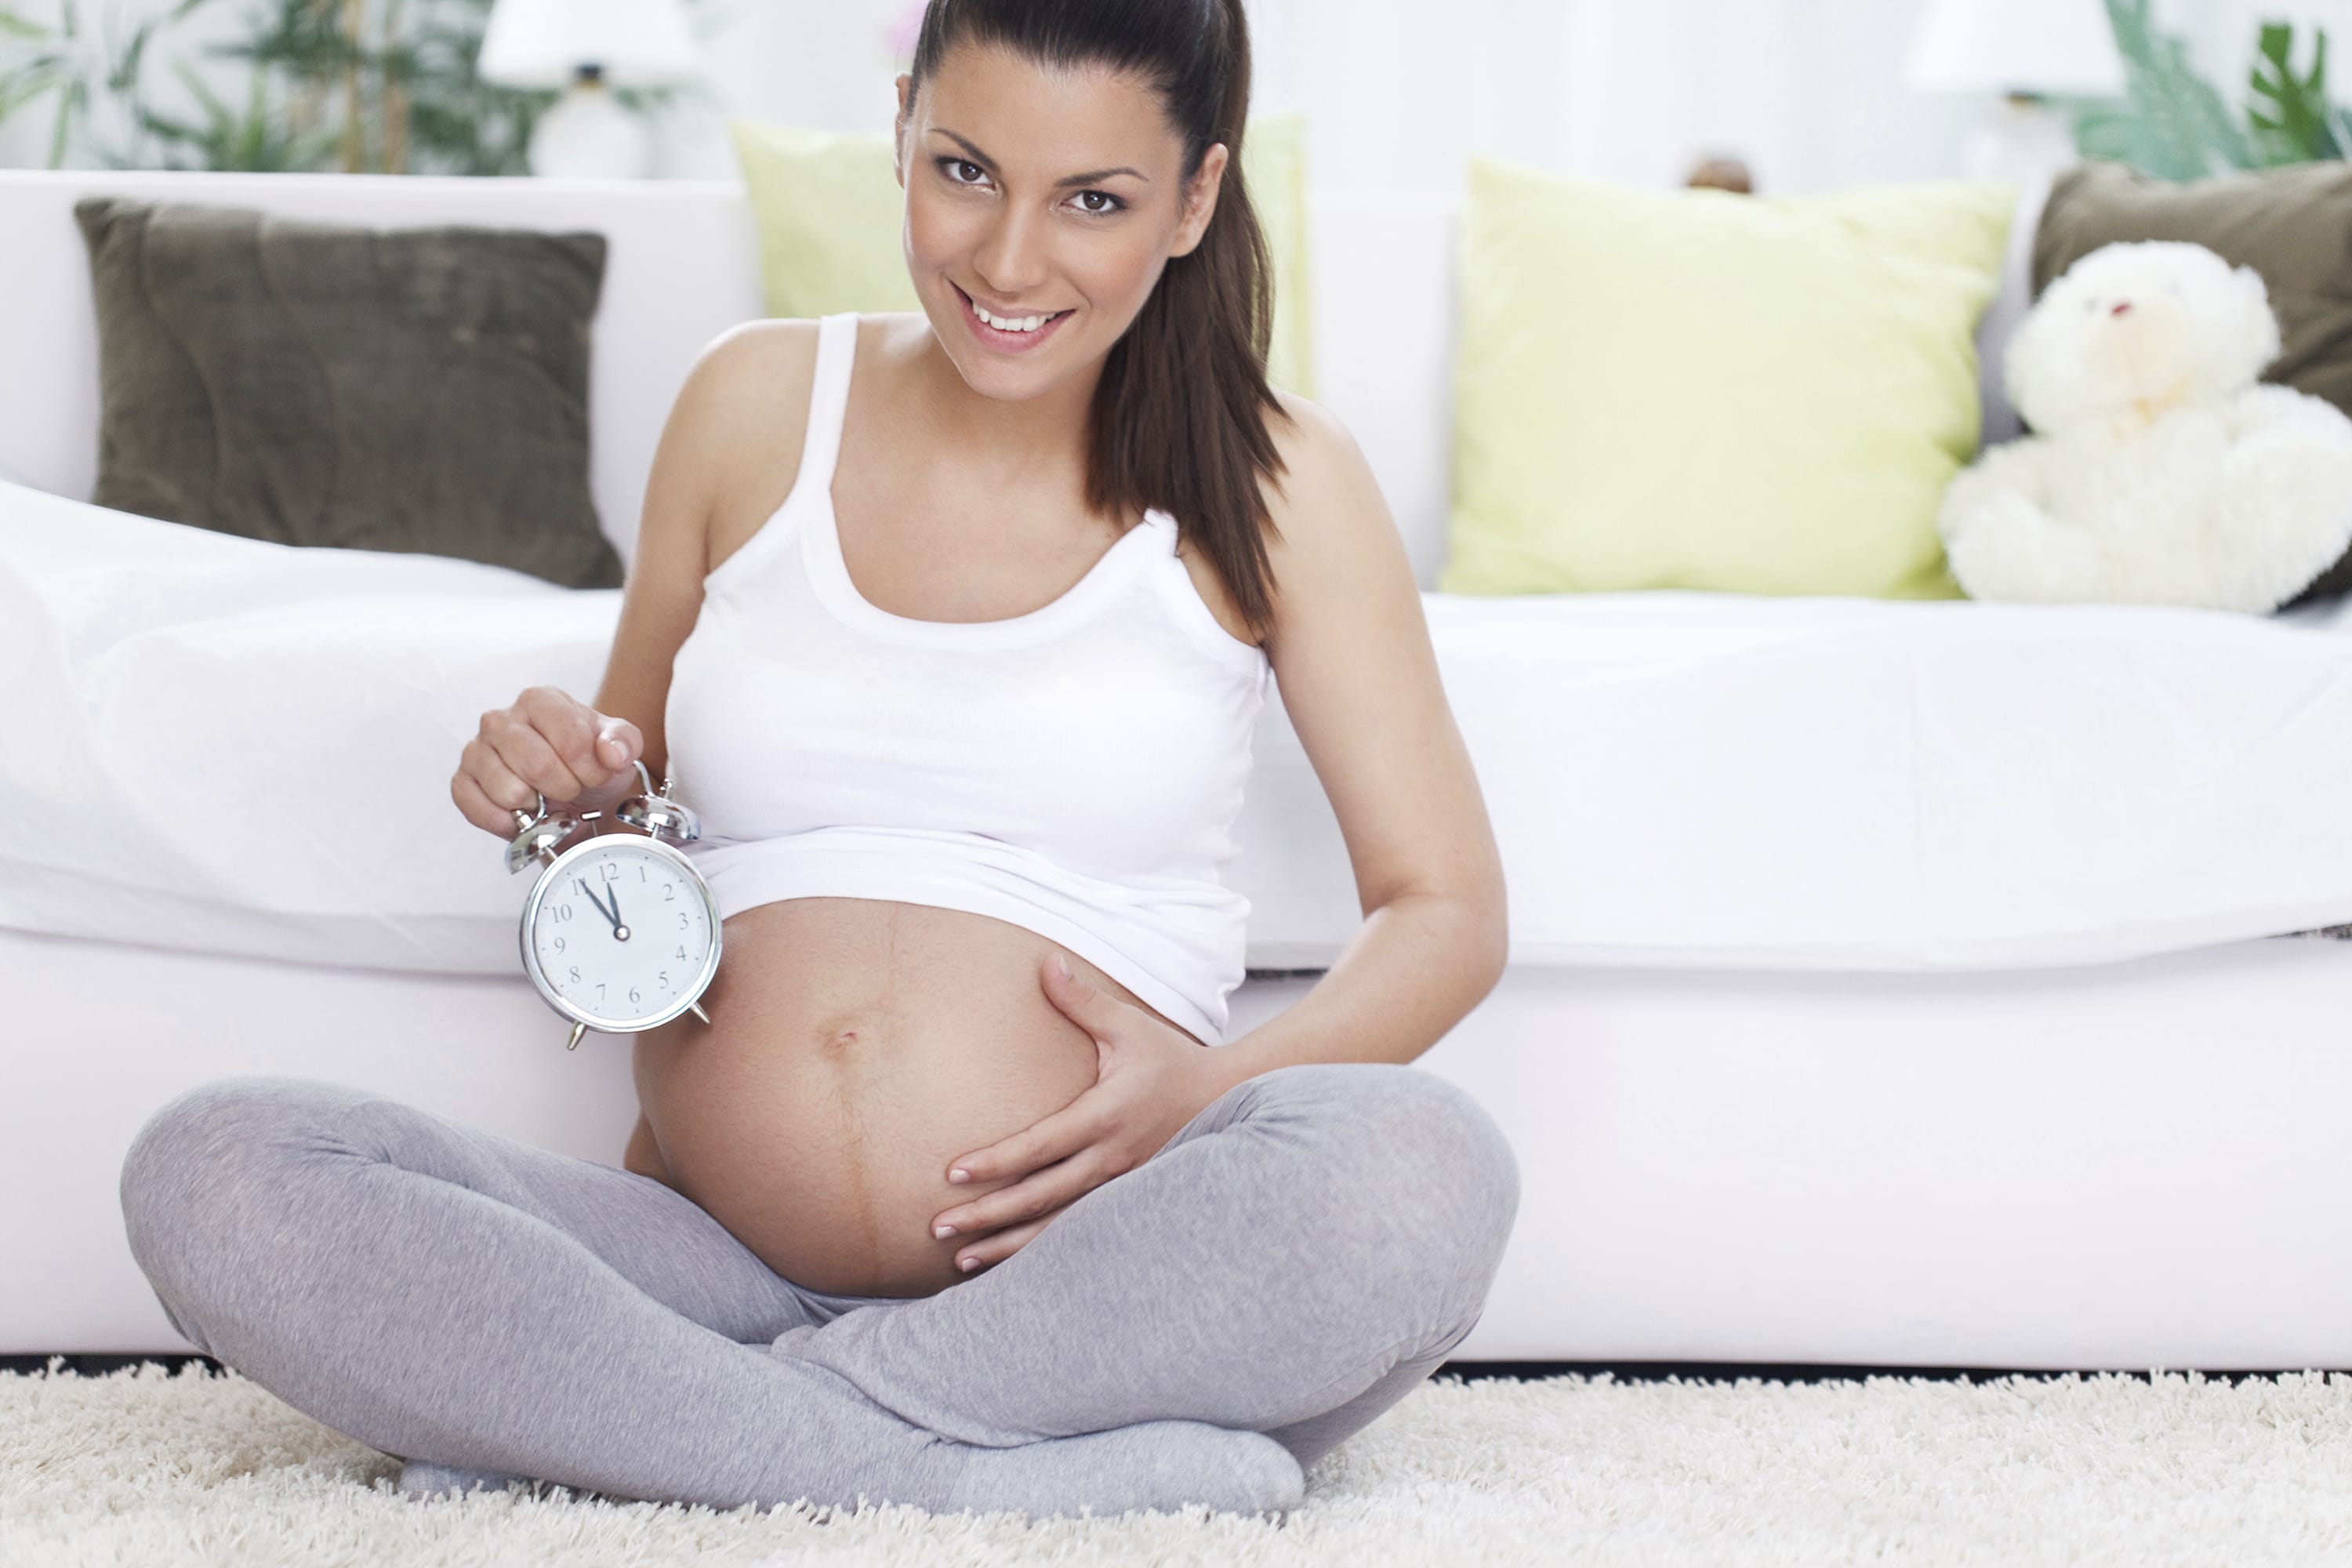 Reggiseno in gravidanza: i consigli su come sceglierlo